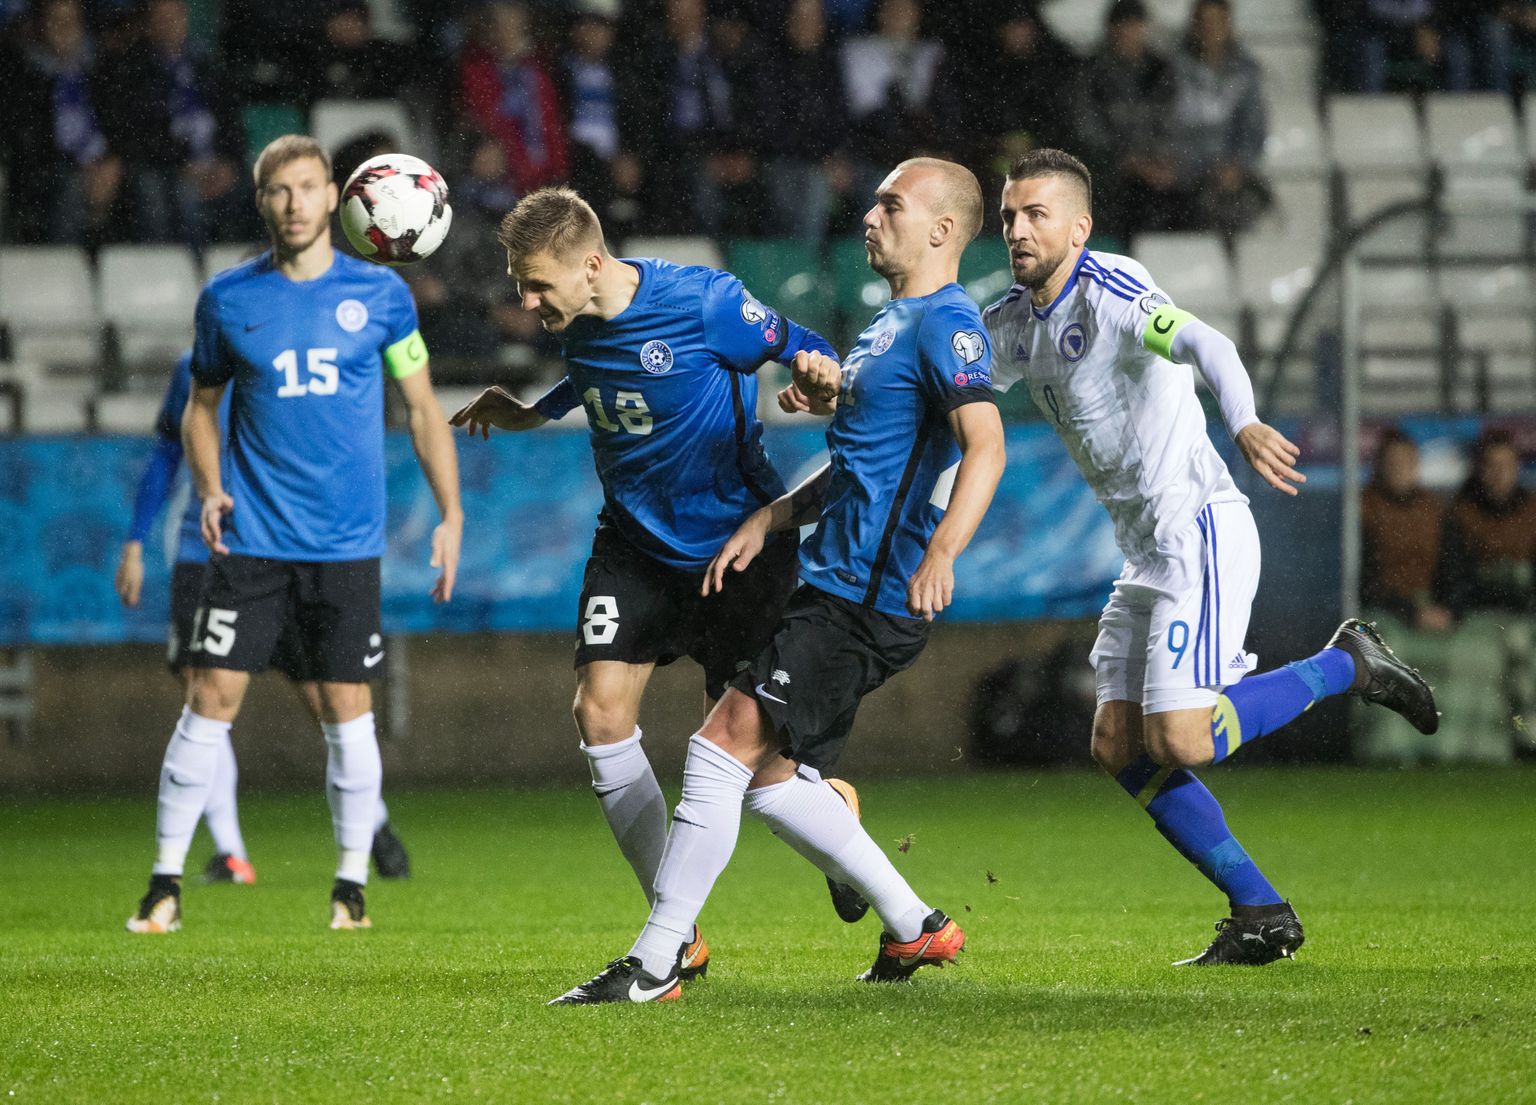 Jalgpalli mängides on Eesti põhiline relv paratamatult nutikas ja tulemusele orienteeritud ning tarbetuid dogmasid eirav mõtlemine, sest mängijate valiku või tehniliste oskuste poolest on meil Euroopas keeruline esirinda tõusta.